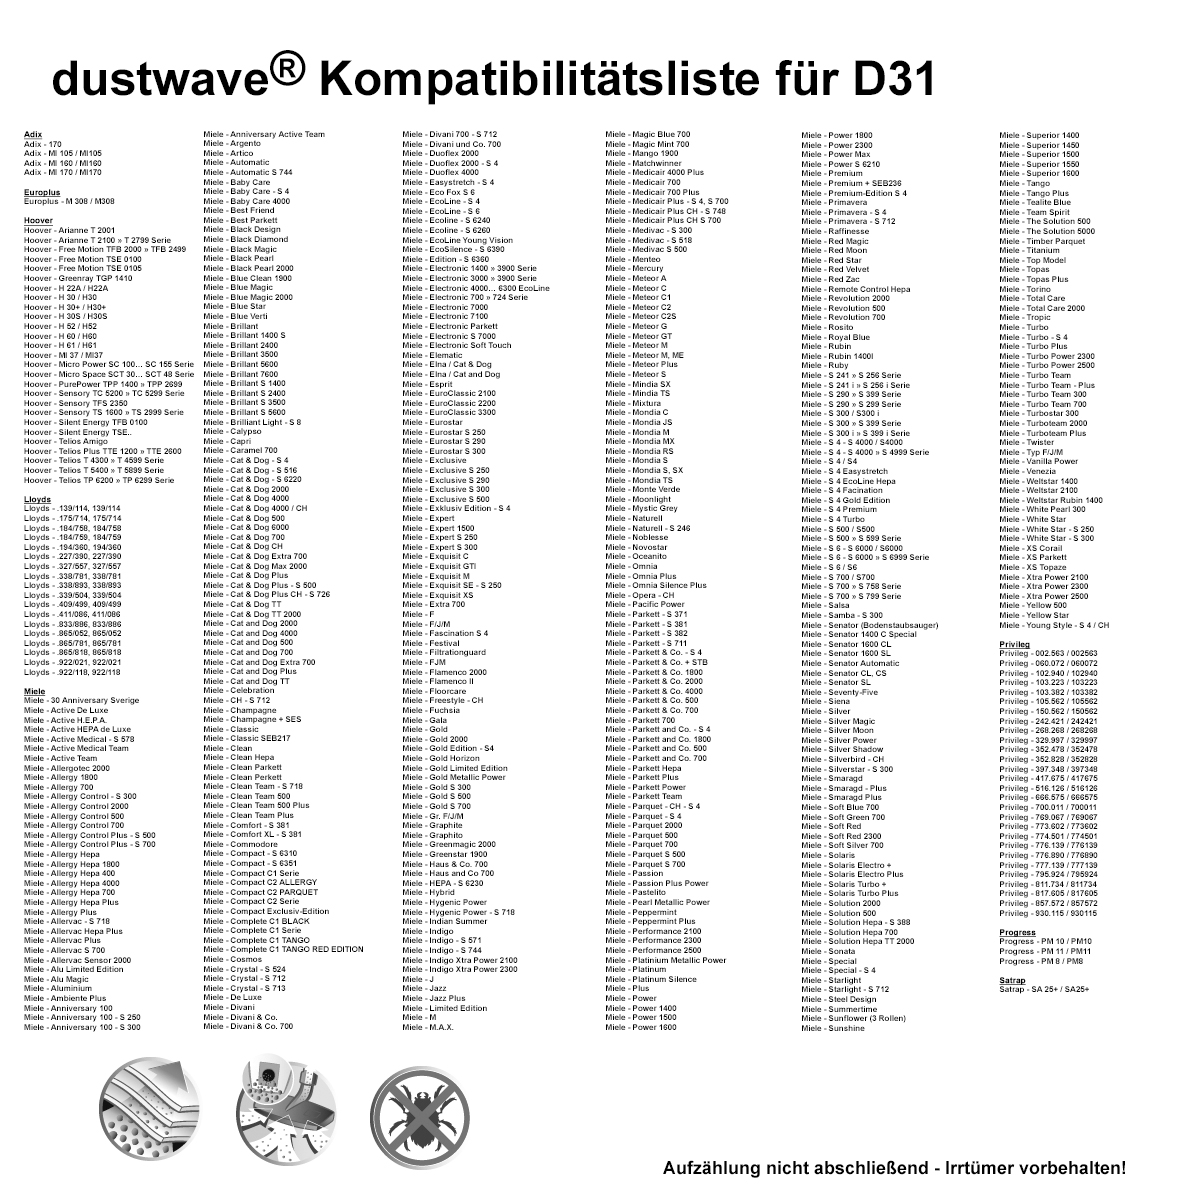 Dustwave® 20 Staubsaugerbeutel für Hoover TS1729 / TRTS1729 - hocheffizient, mehrlagiges Mikrovlies mit Hygieneverschluss - Made in Germany